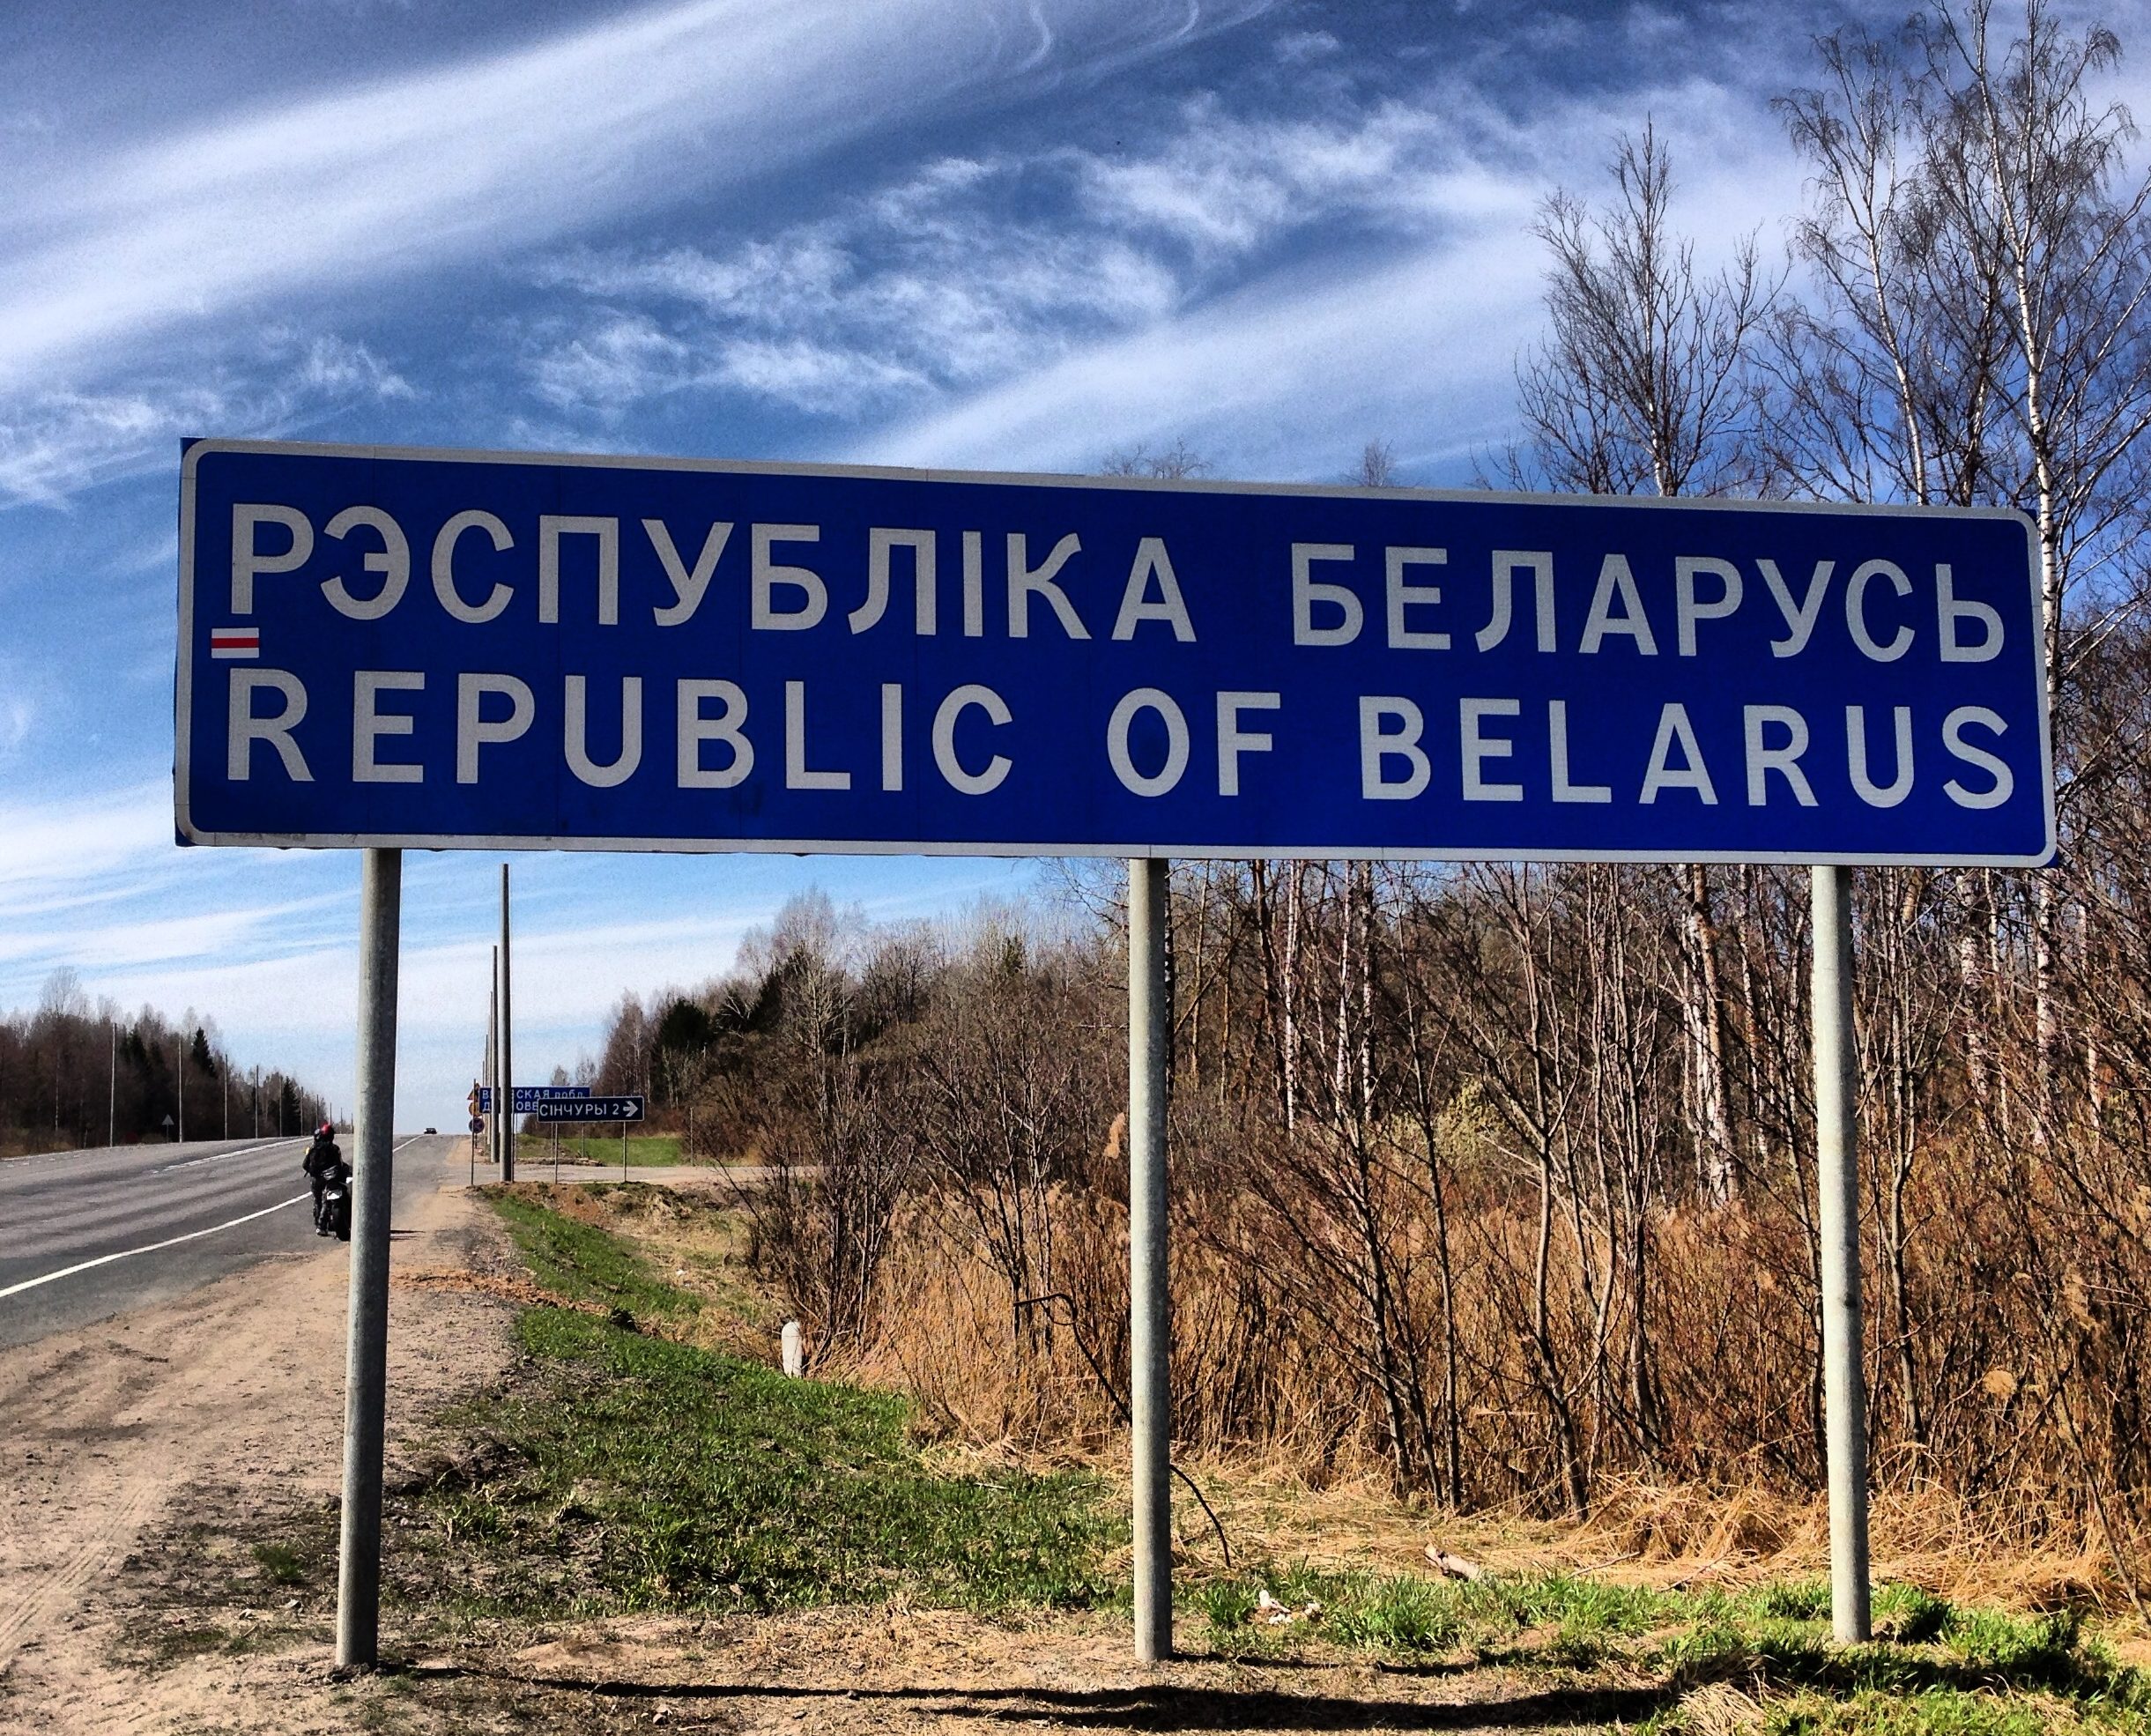 Ситуация на границе Беларуси и Литвы — искусственный миграционный кризис, созданный Лукашенко в ответ на санкции — политолог